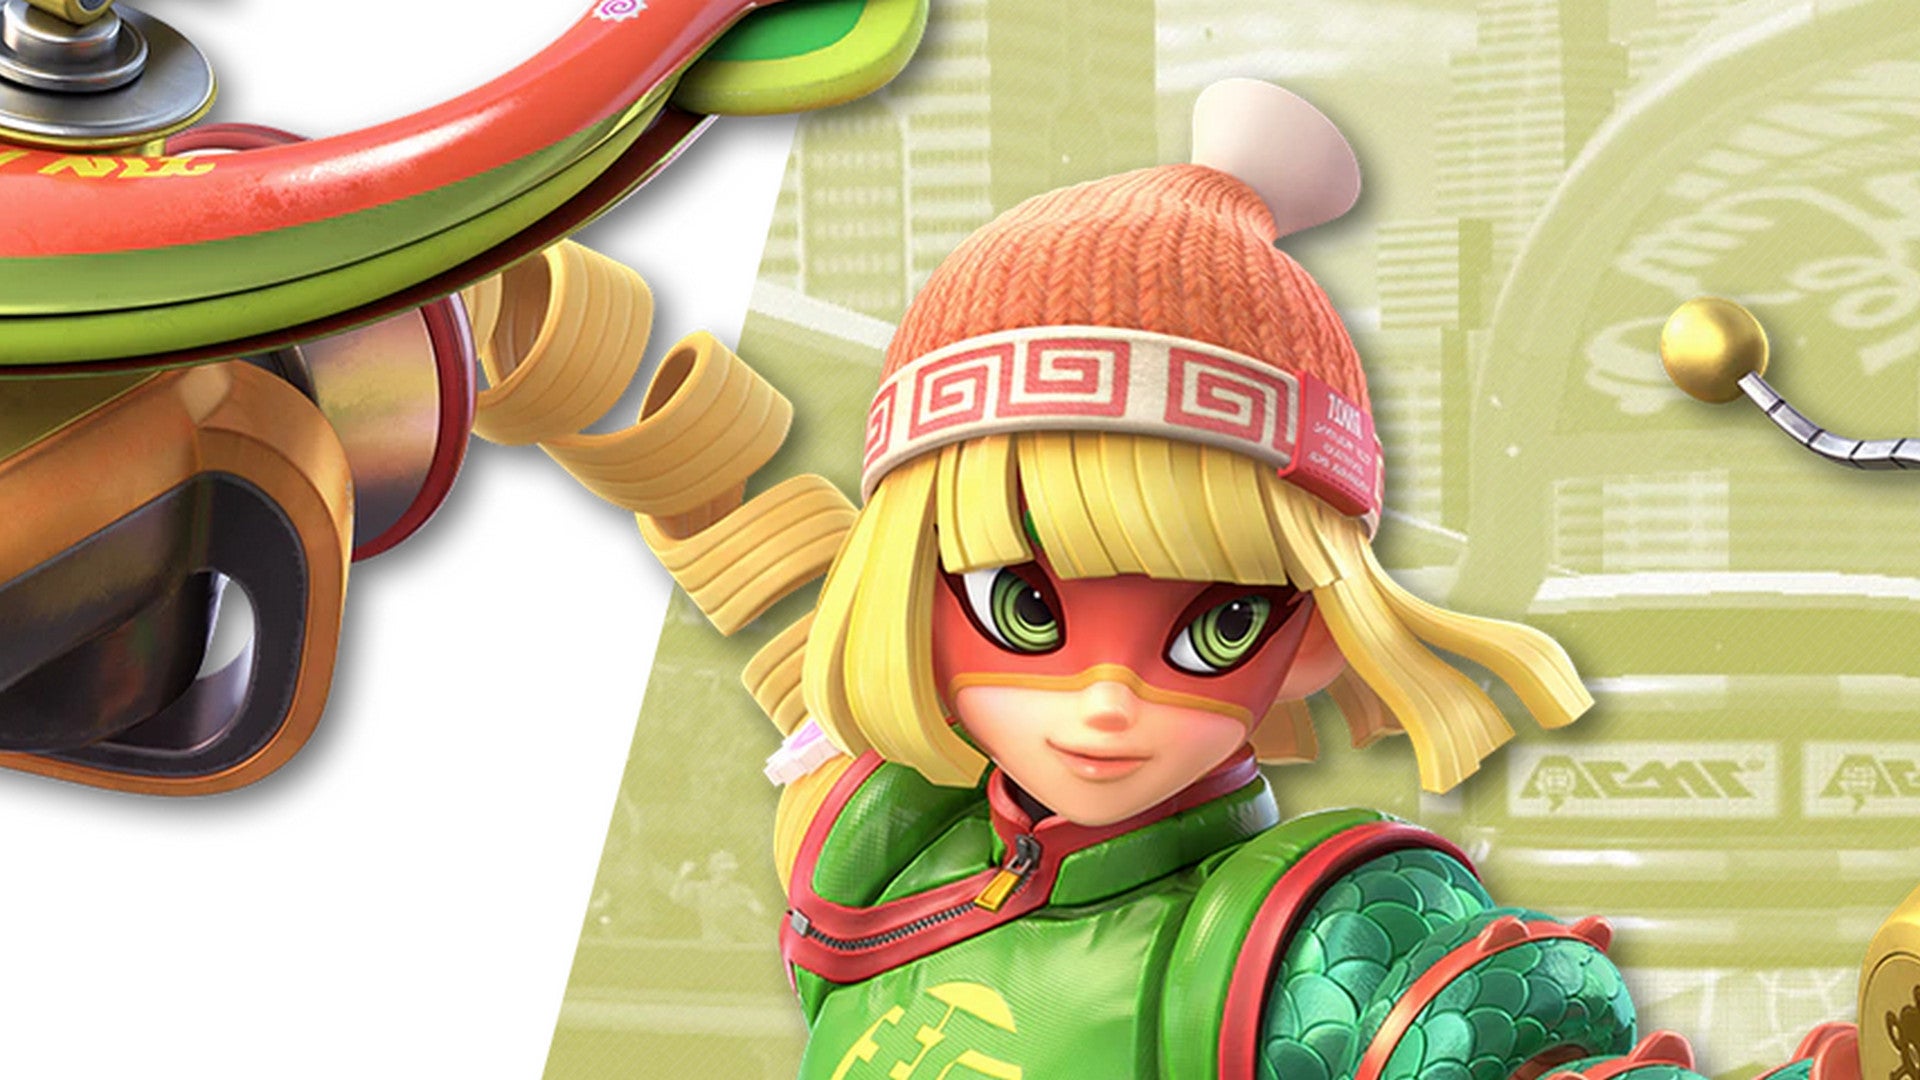 Bilder zu Smash Bros: Min Min Amiibo jetzt für Switch erhältlich - Wo ihr sie kaufen könnt